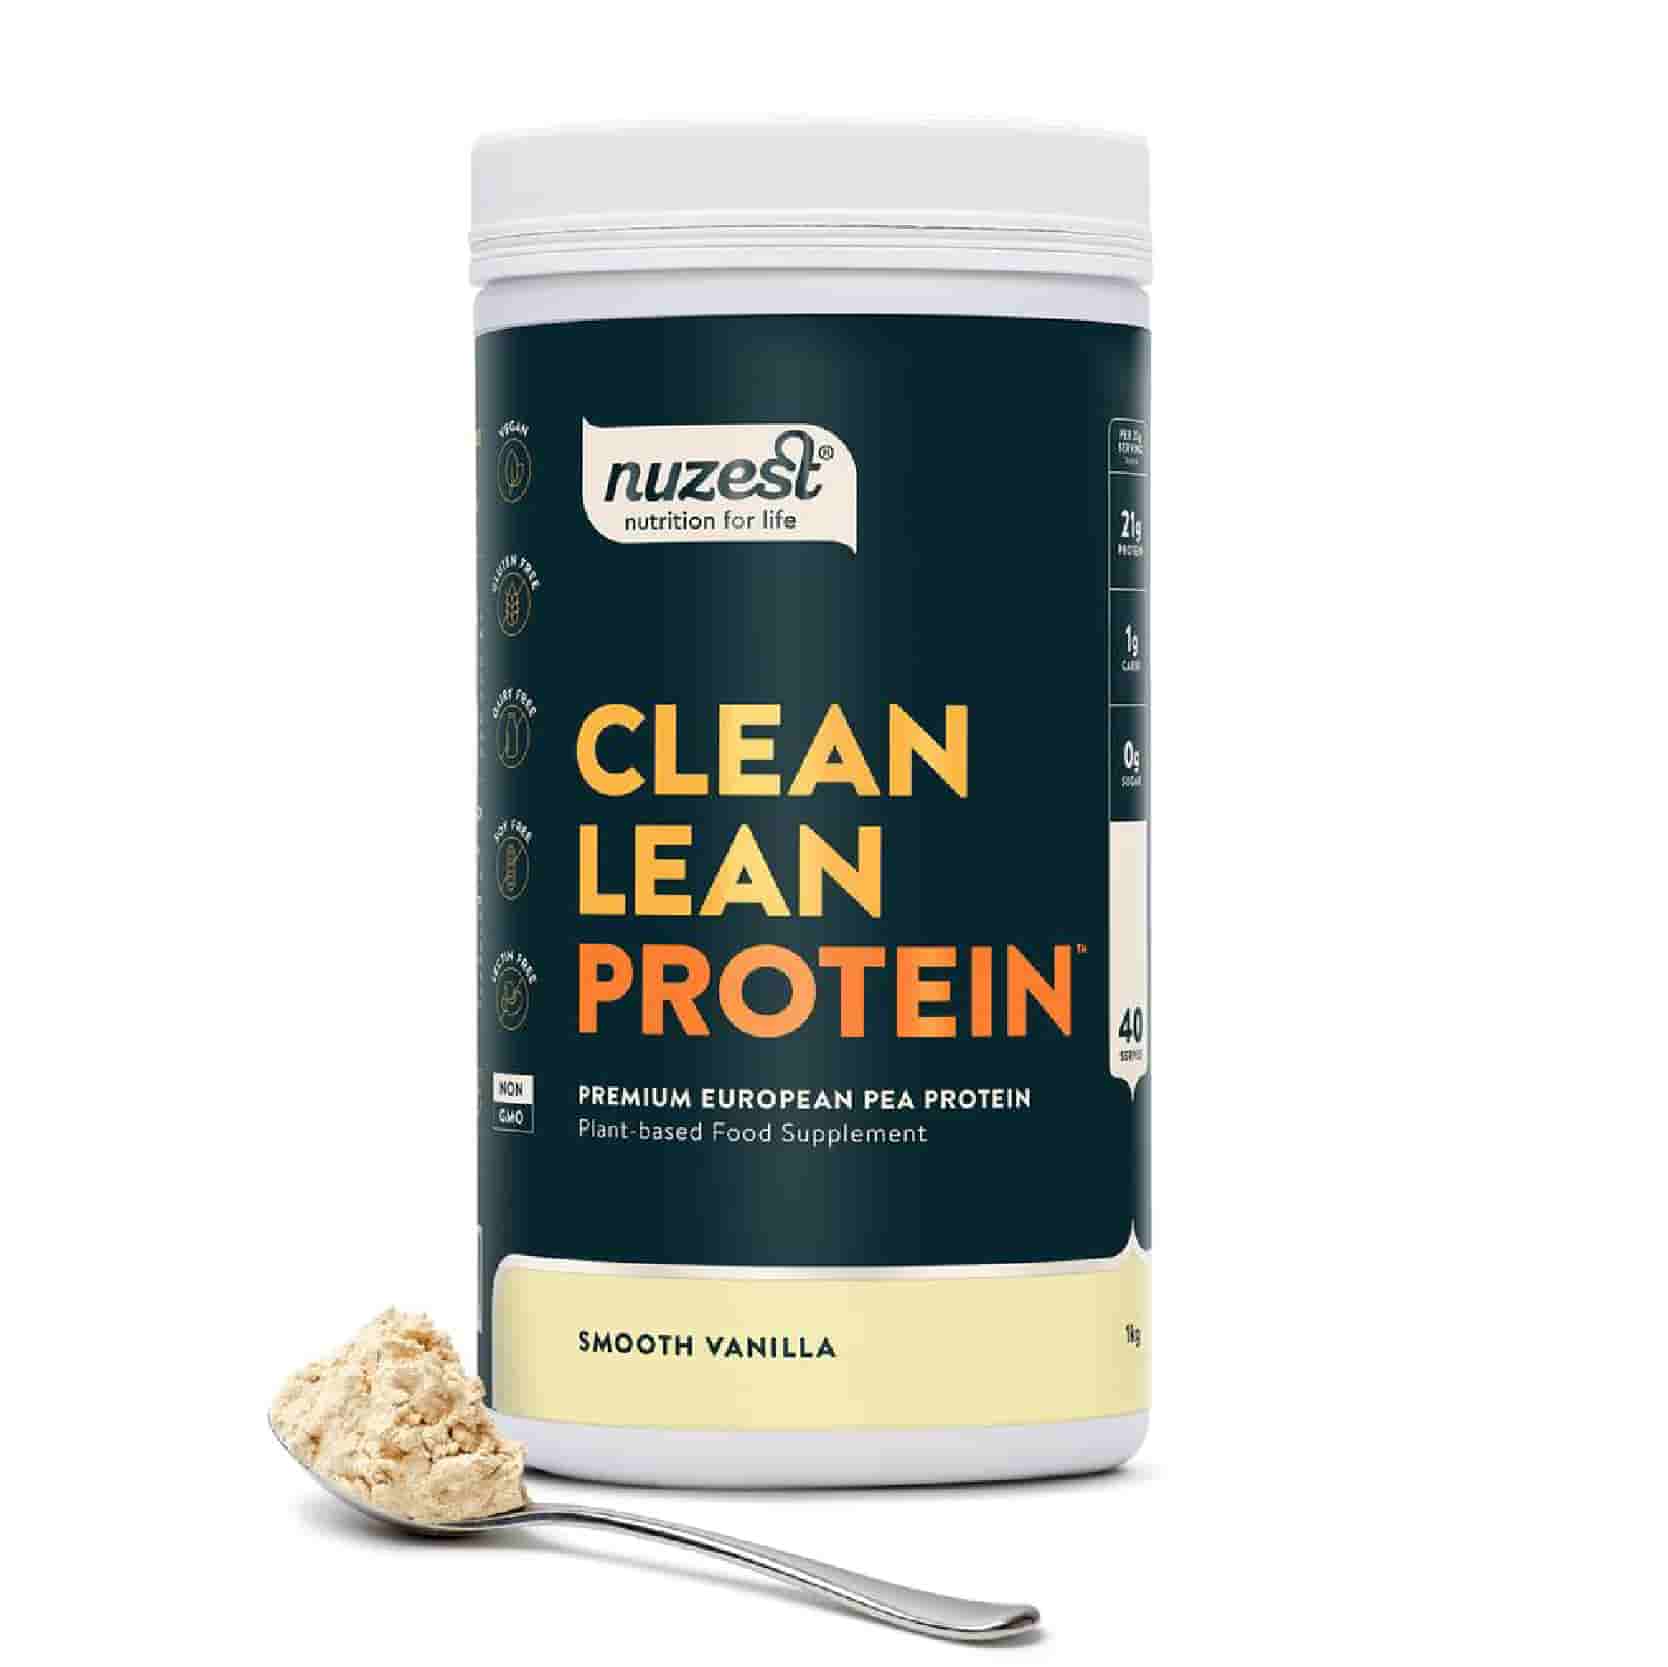 Nuzest Clean Lean Protein Smooth Vanilla 1 kg bei LiveHelfi kaufen